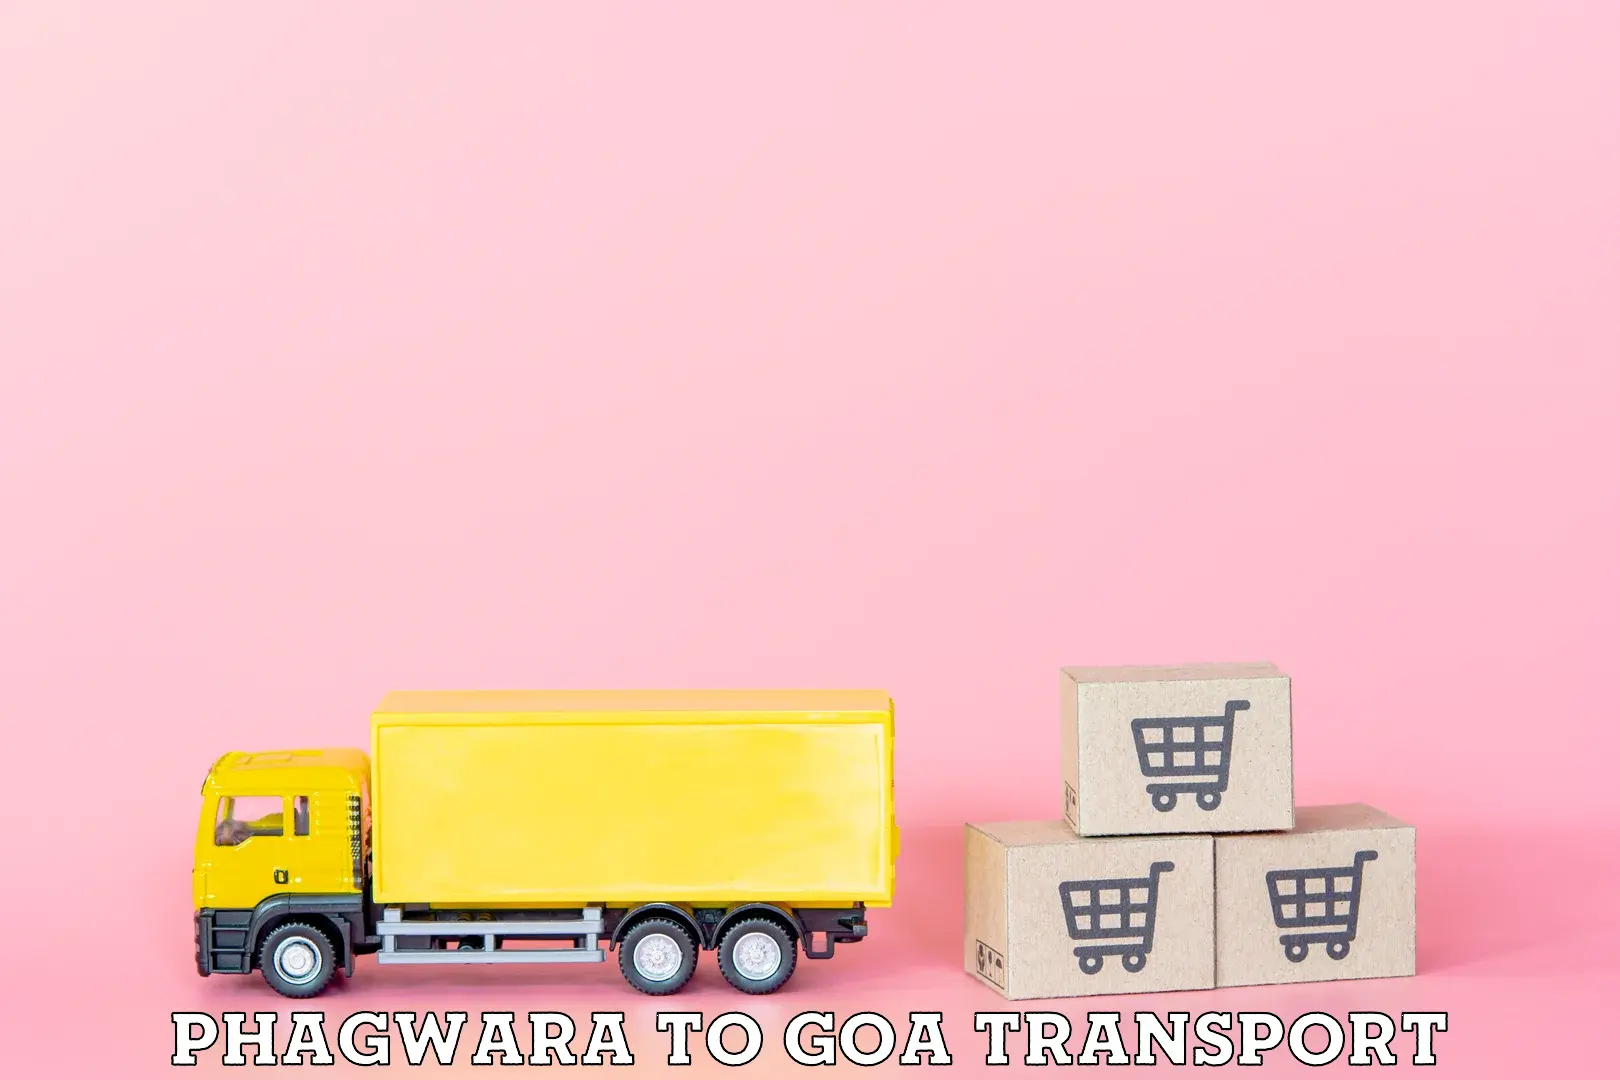 Nationwide transport services Phagwara to Bardez